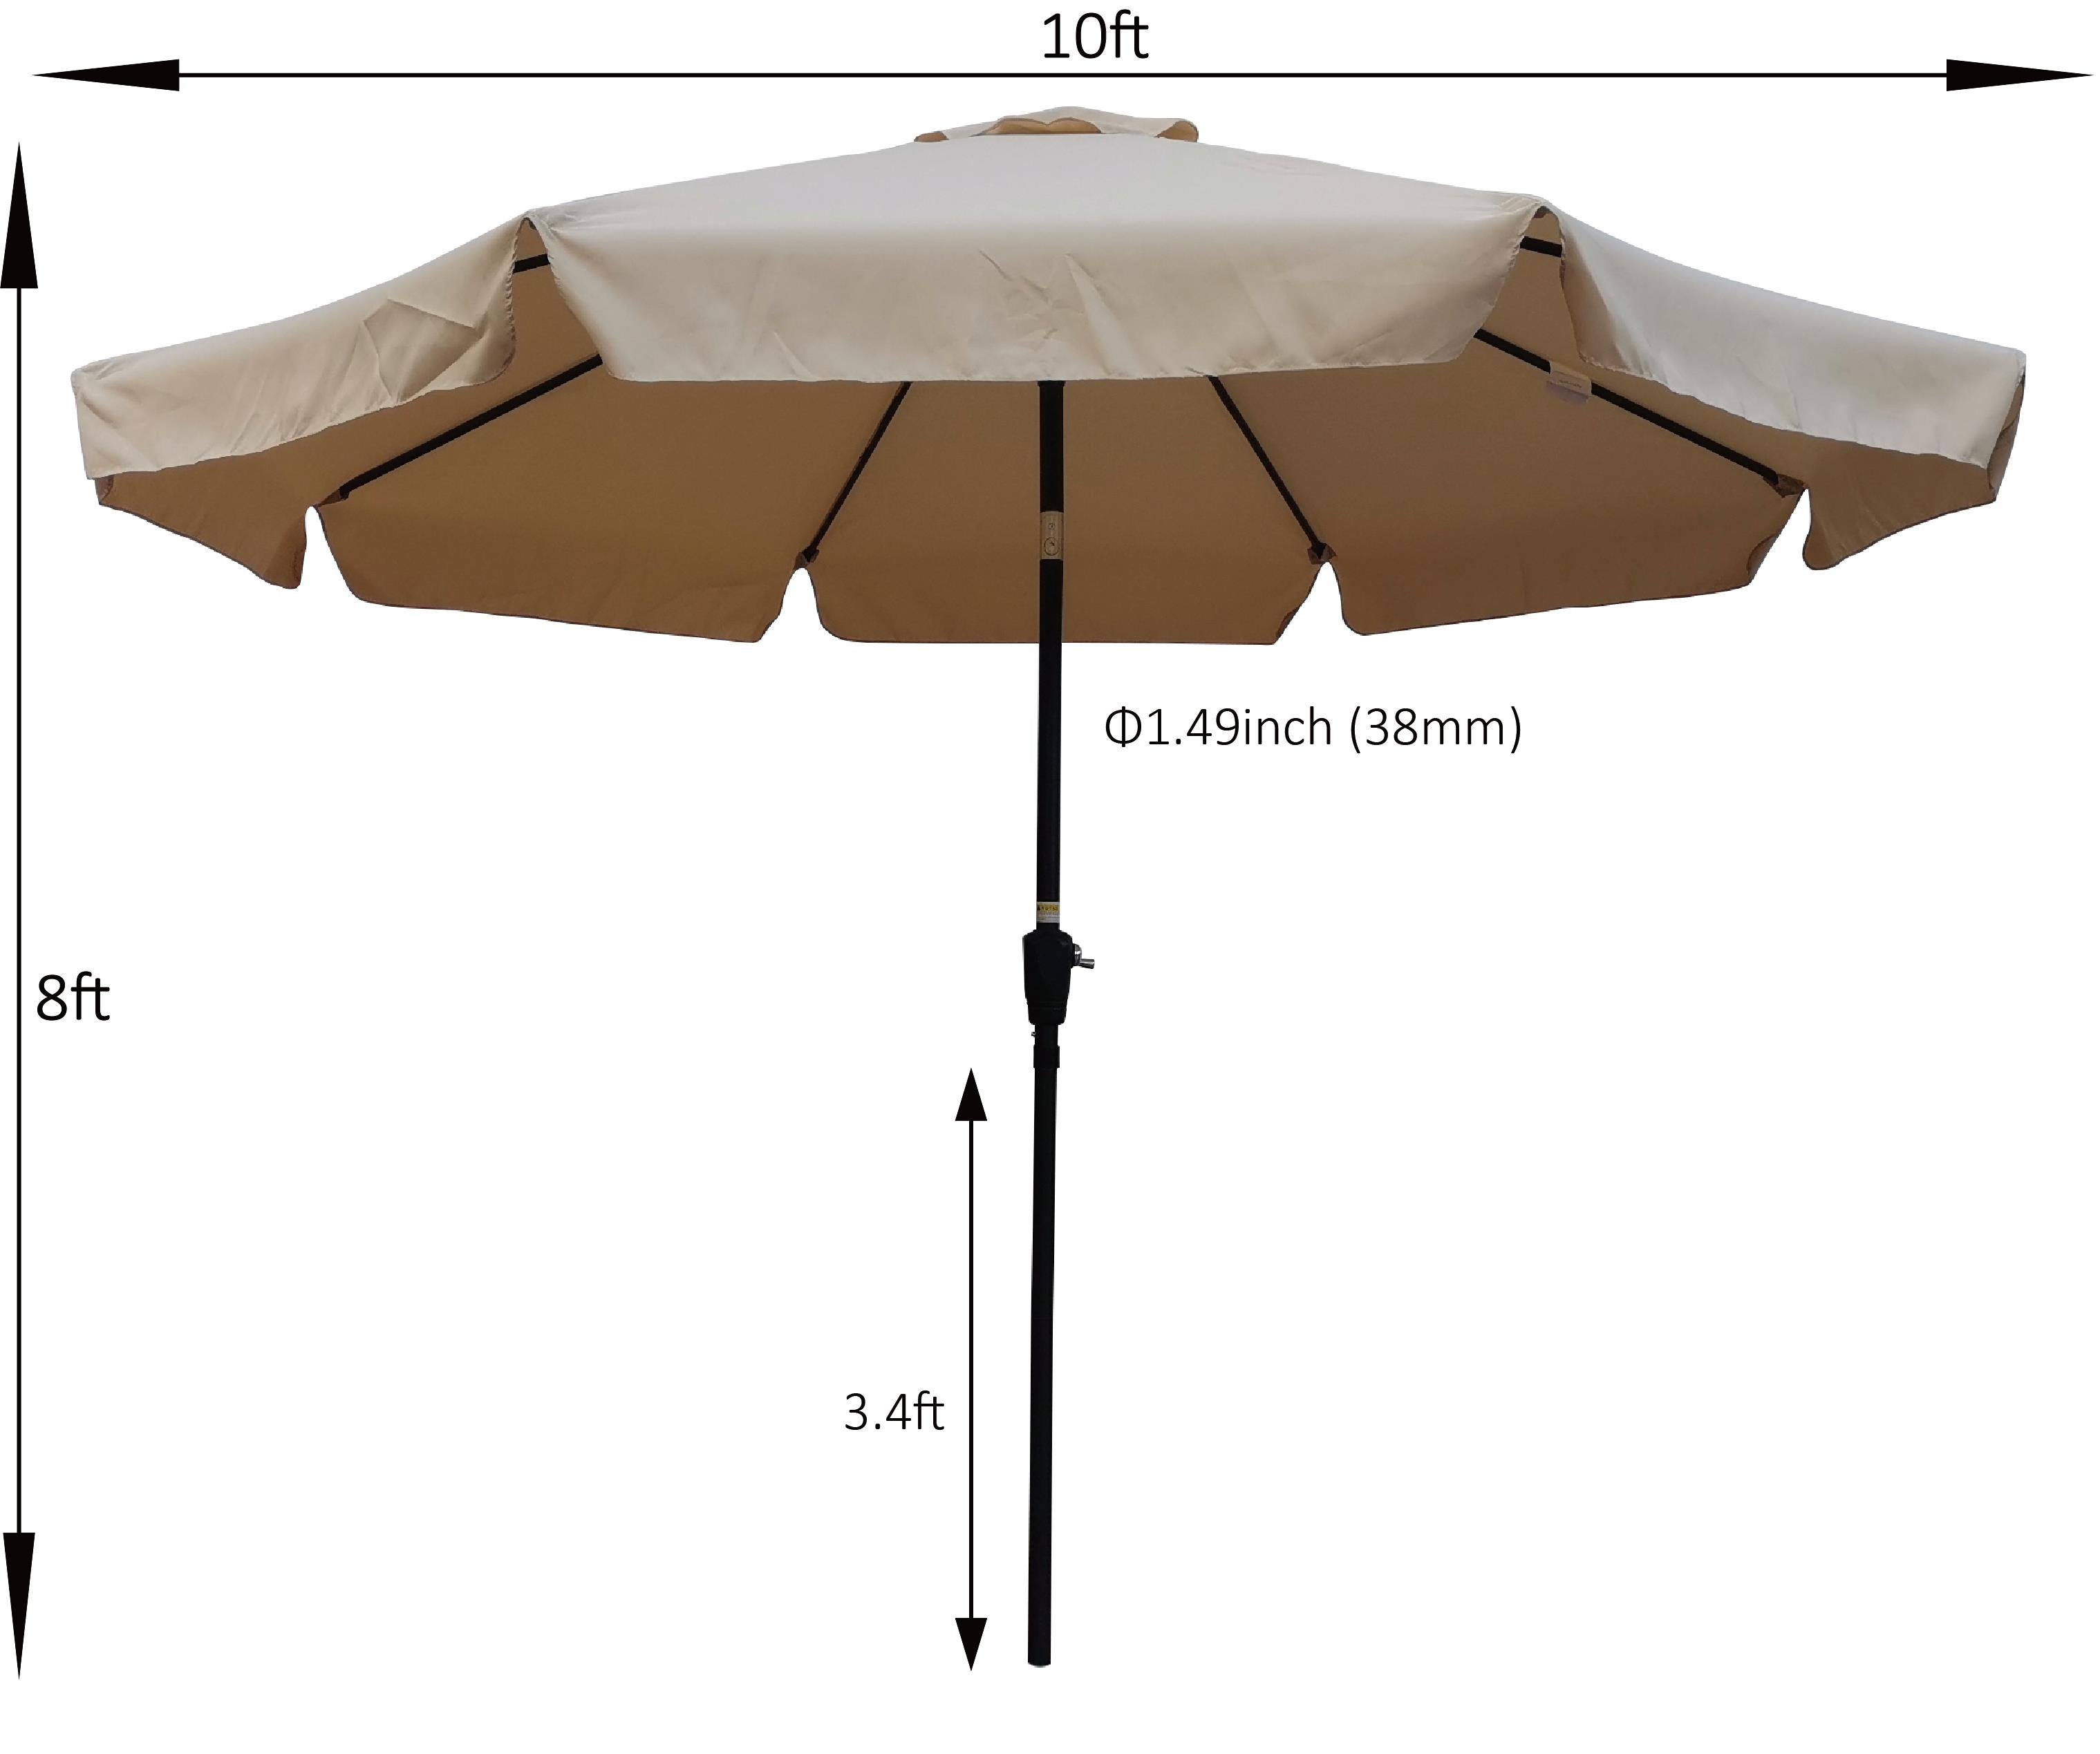 UBesGoo 10FT Outdoor Garden Table Umbrella Patio Umbrella Tan